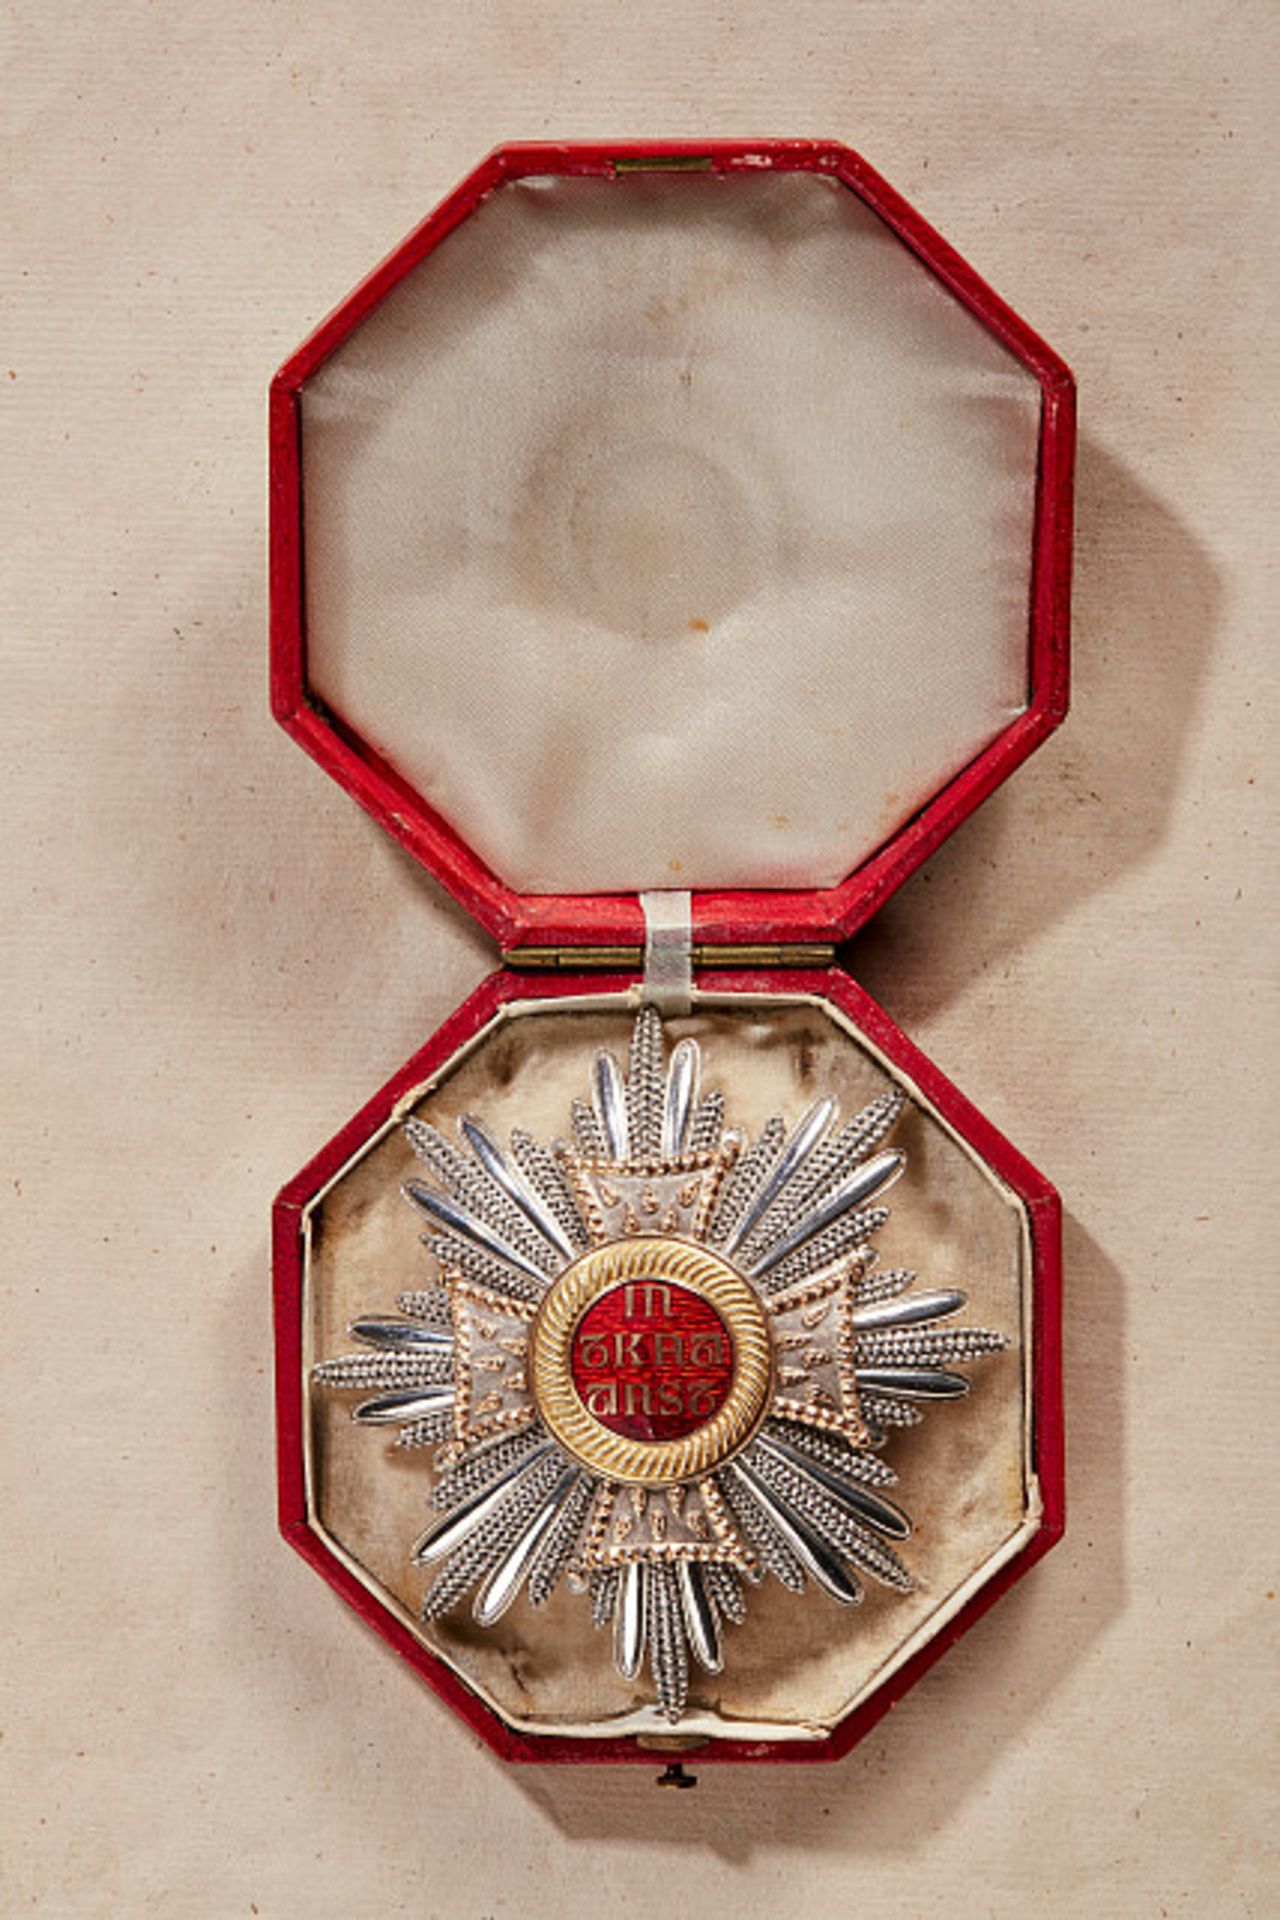 KÖNIGREICH BAYERN - HAUSRITTERORDEN VOM HL. HUBERTUS : Bruststern zum Ordenskreuz.Silber, die - Bild 4 aus 4